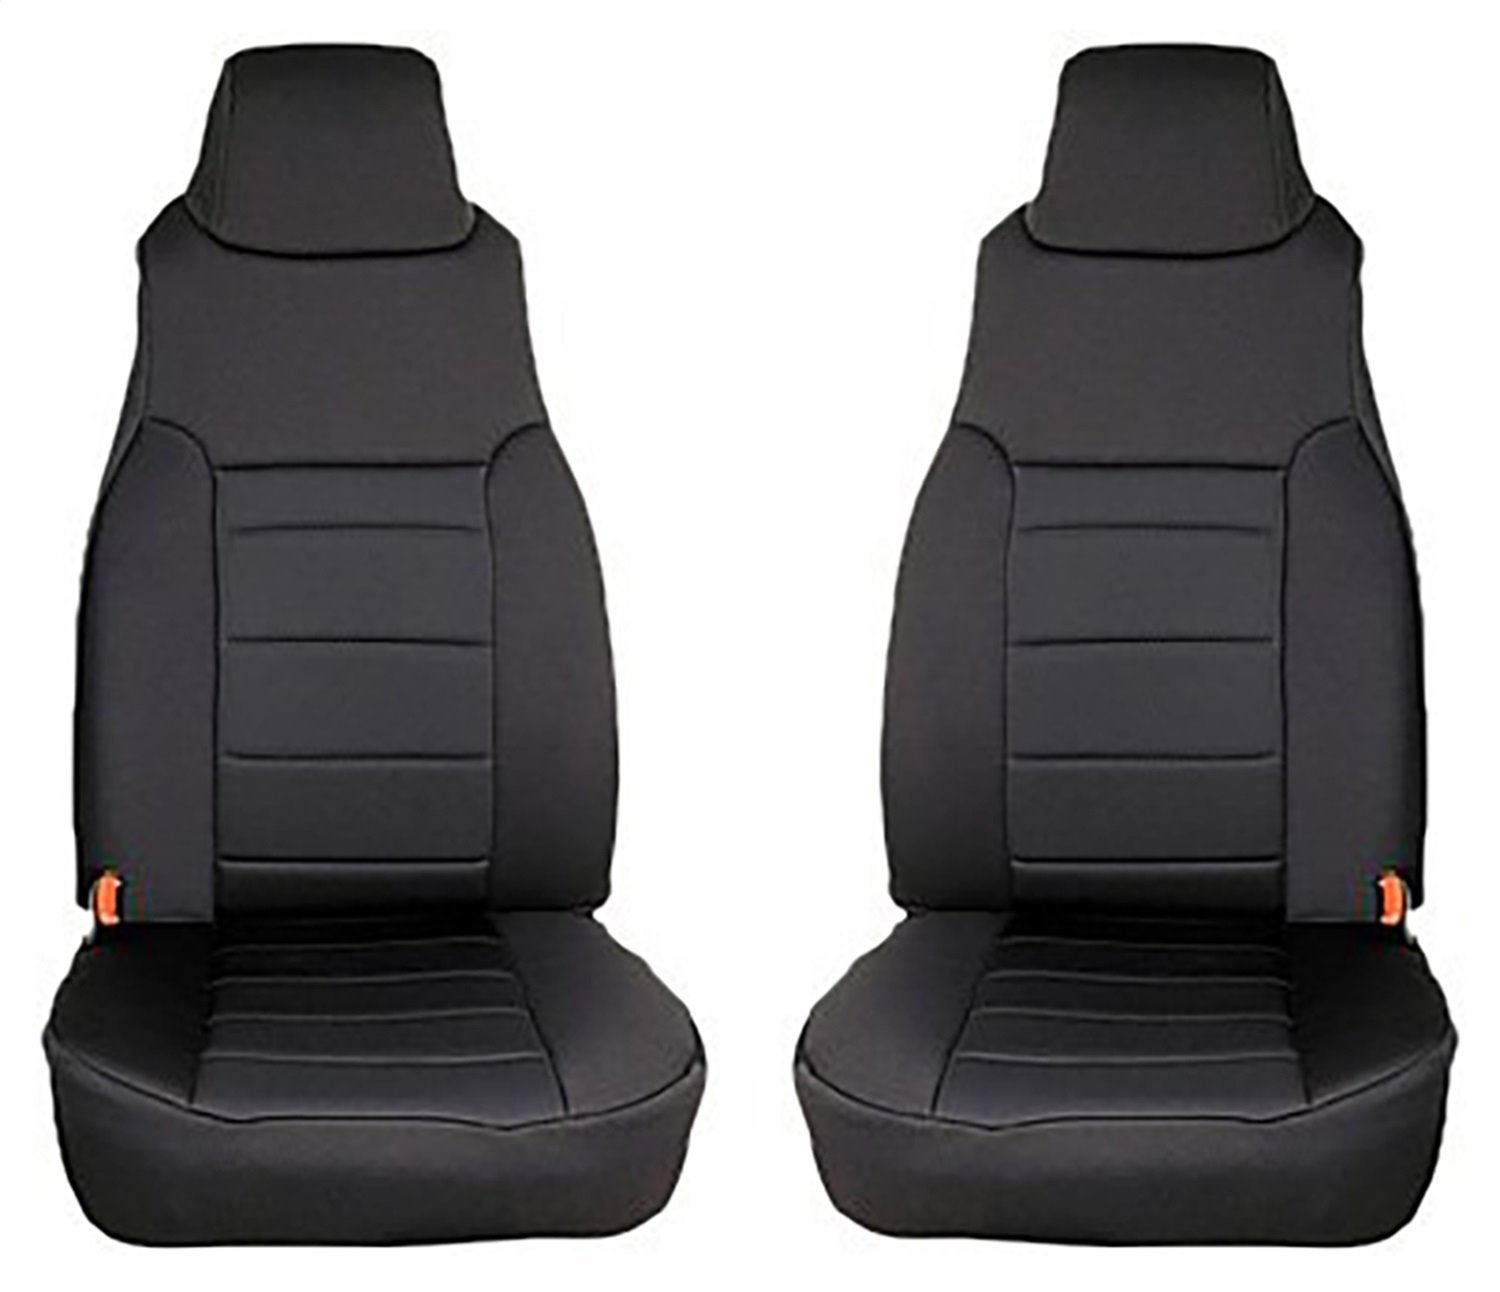 Neoprene Front Seat Covers for 1997-2002 TJ Wrangler